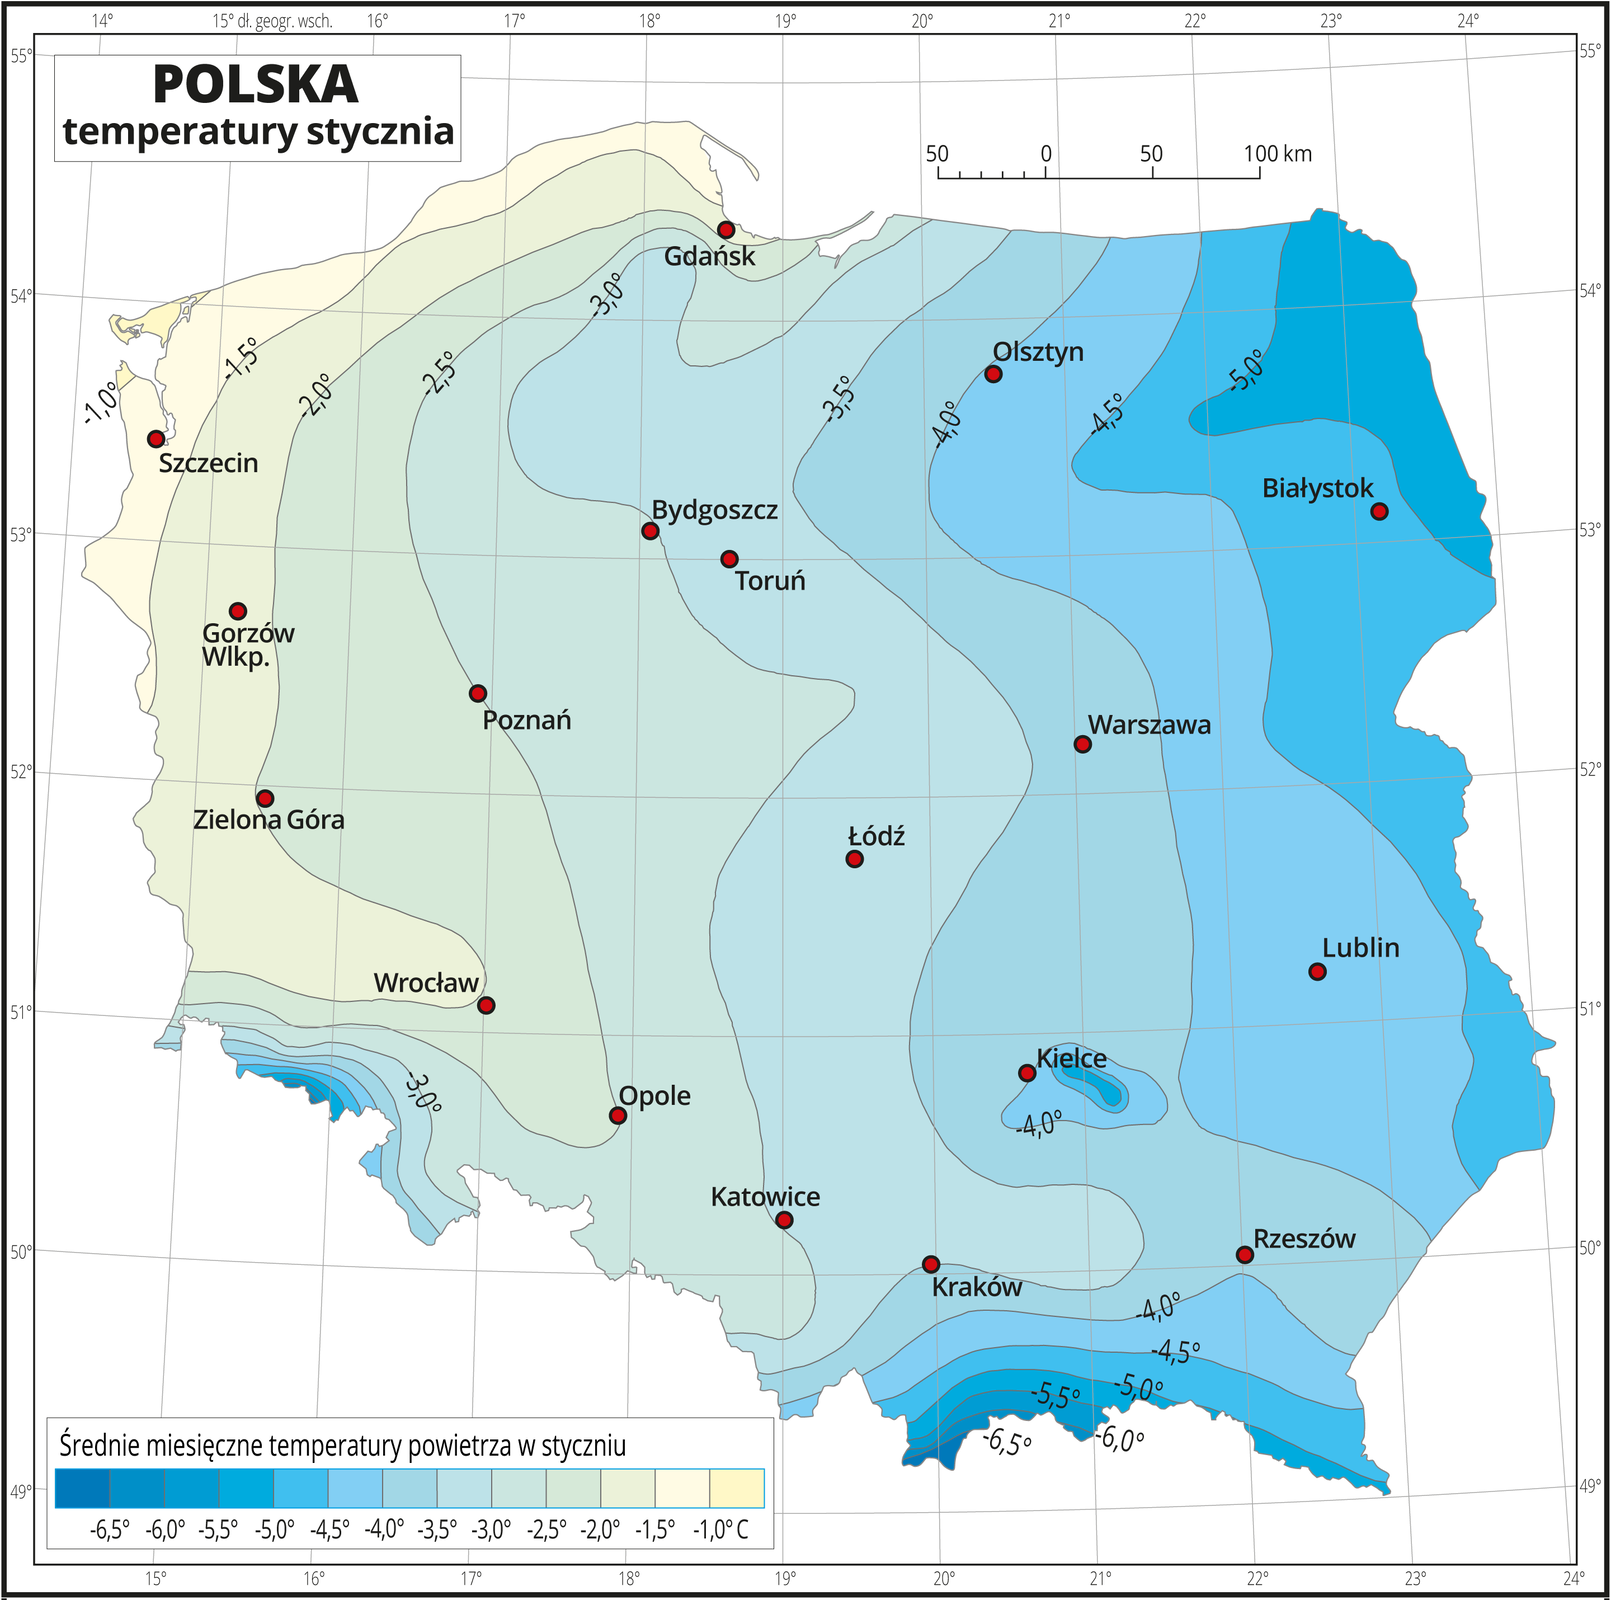 Ilustracja przedstawia mapę Polski. Na mapie kolorami zaznaczono średnie miesięczne temperatury powietrza w styczniu. Z lewej strony mapy kolor jest żółty, w kierunku wschodnim, w prawo i południowym, w dół mapy przechodzi w błękitny, dalej niebieski i ciemnoniebieski. Na izotermach opisano średnią miesięczną temperaturę stycznia co pół stopnia. Czerwonymi punktami zaznaczono miasta wojewódzkie. Mapa pokryta jest siatką równoleżników i południków. Dookoła mapy jest biała ramka, w której opisane są współrzędne geograficzne co jeden stopień. Poniżej mapy w legendzie umieszczono prostokątny poziomy pasek. Pasek podzielono na trzynaście kolorów. Z lewej strony ciemnoniebieskie do jasnoniebieskiego, środek błękitny, z prawej strony –seledynowy, kremowy i żółty. Każda część paska obrazuje półstopniowy przedział średniej miesięcznej temperatury powietrza w styczniu od minus sześć i pół stopnia Celsjusza – niebieskie do minus jeden stopnia Celsjusza – żółte, co pół stopnia.